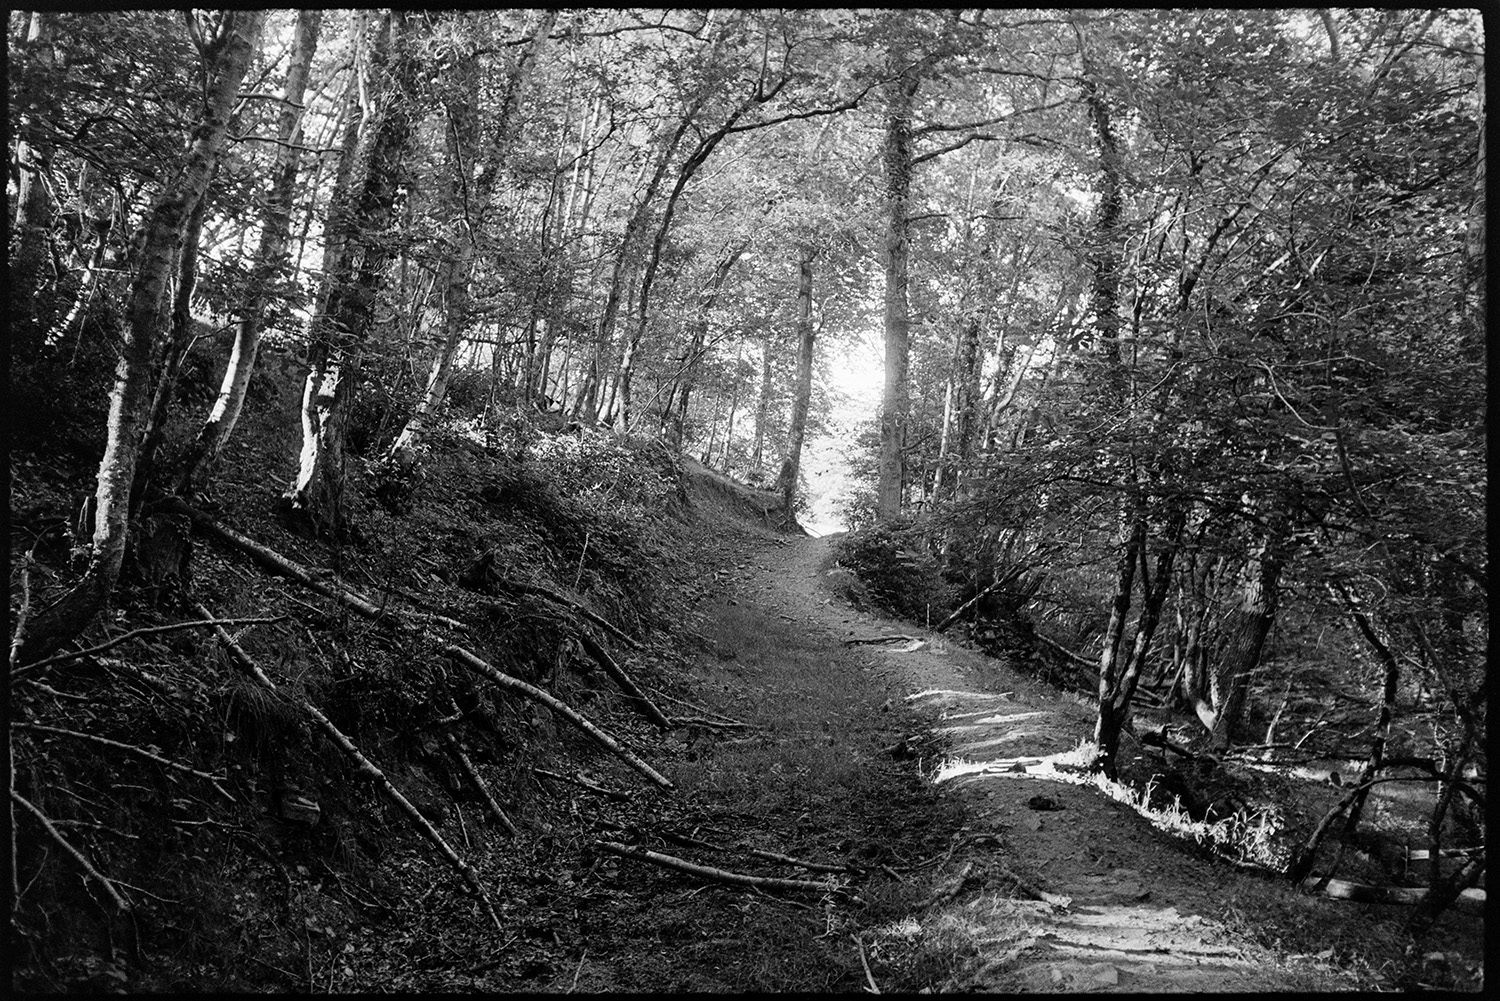 Wood track and stream. 
[A footpath running through woodland at Densham, Ashreigney.]